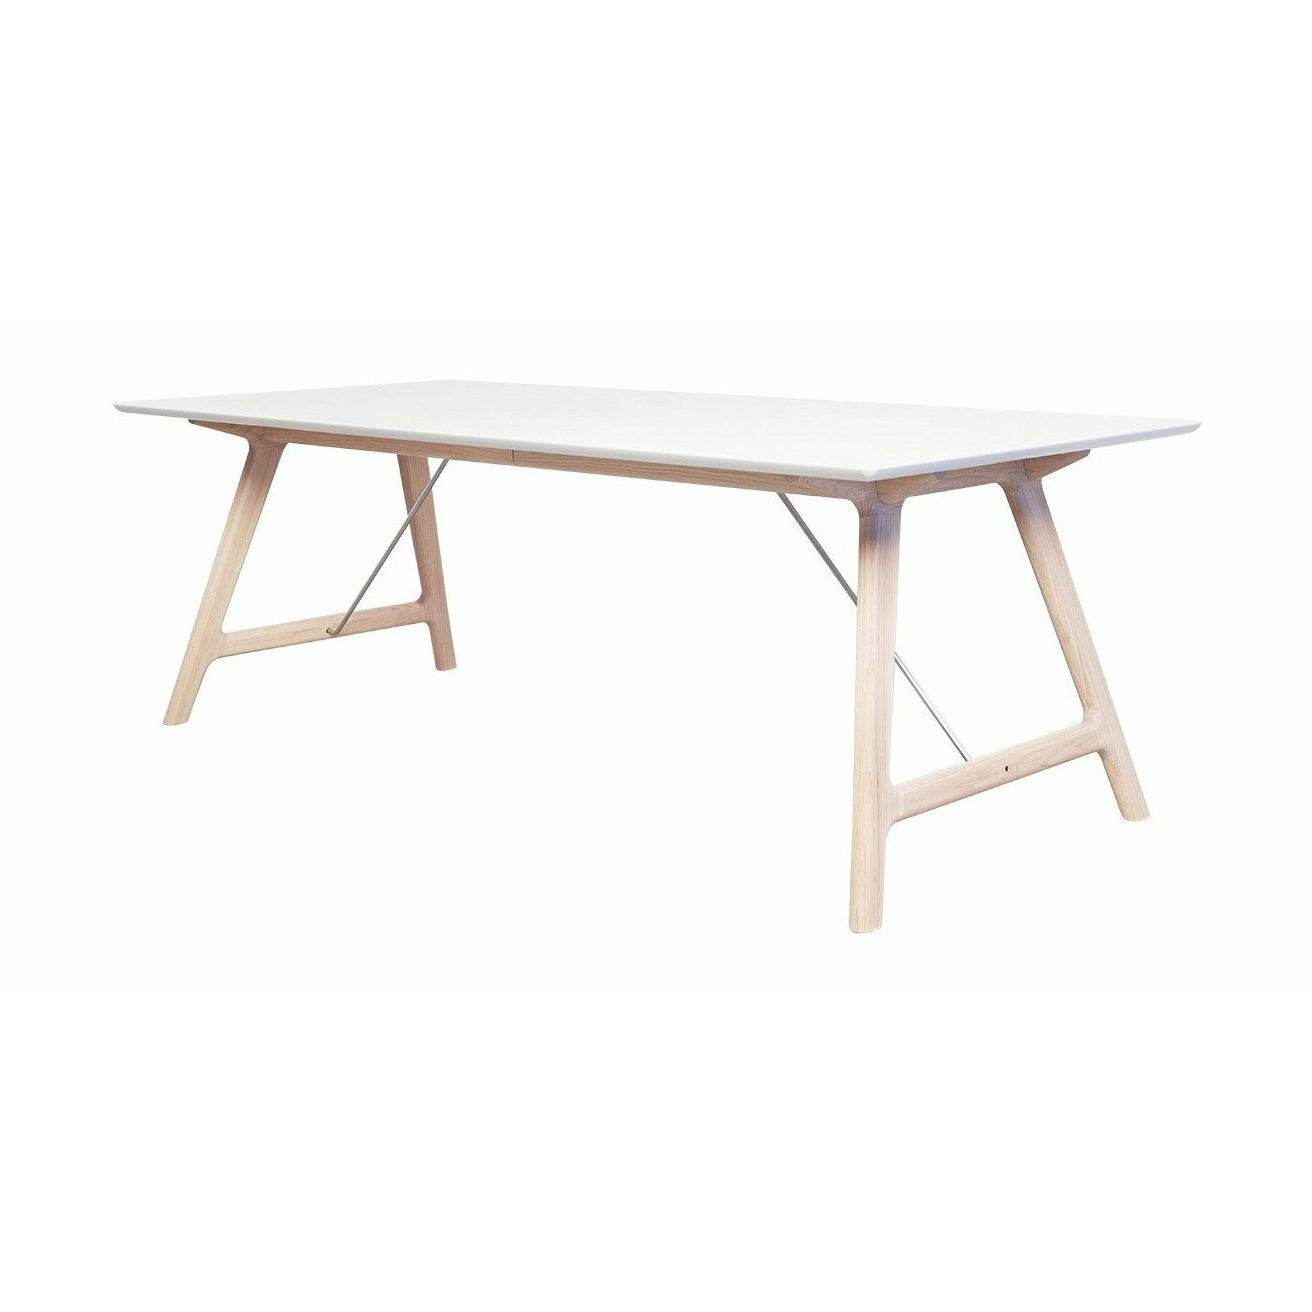 Andersen Furniture T7 Udtræksbord i Hvid Laminat, Sæbet Eg Understel, 220cm